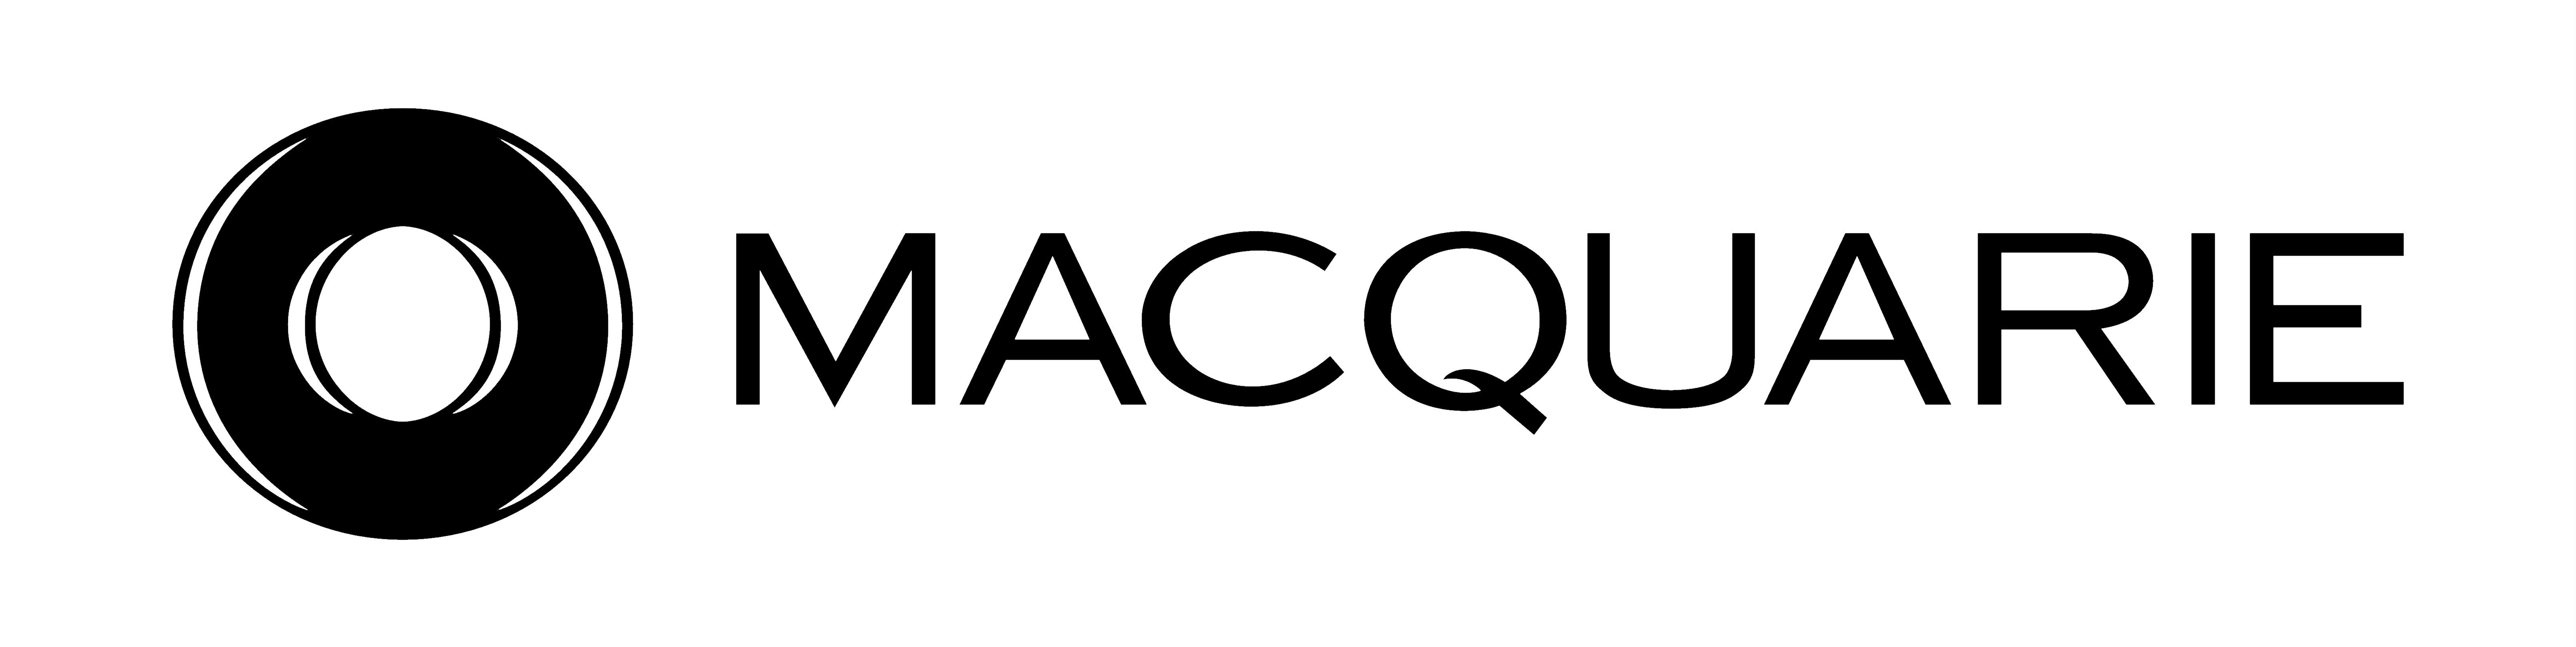 Macquarie Logo PNG - 38430